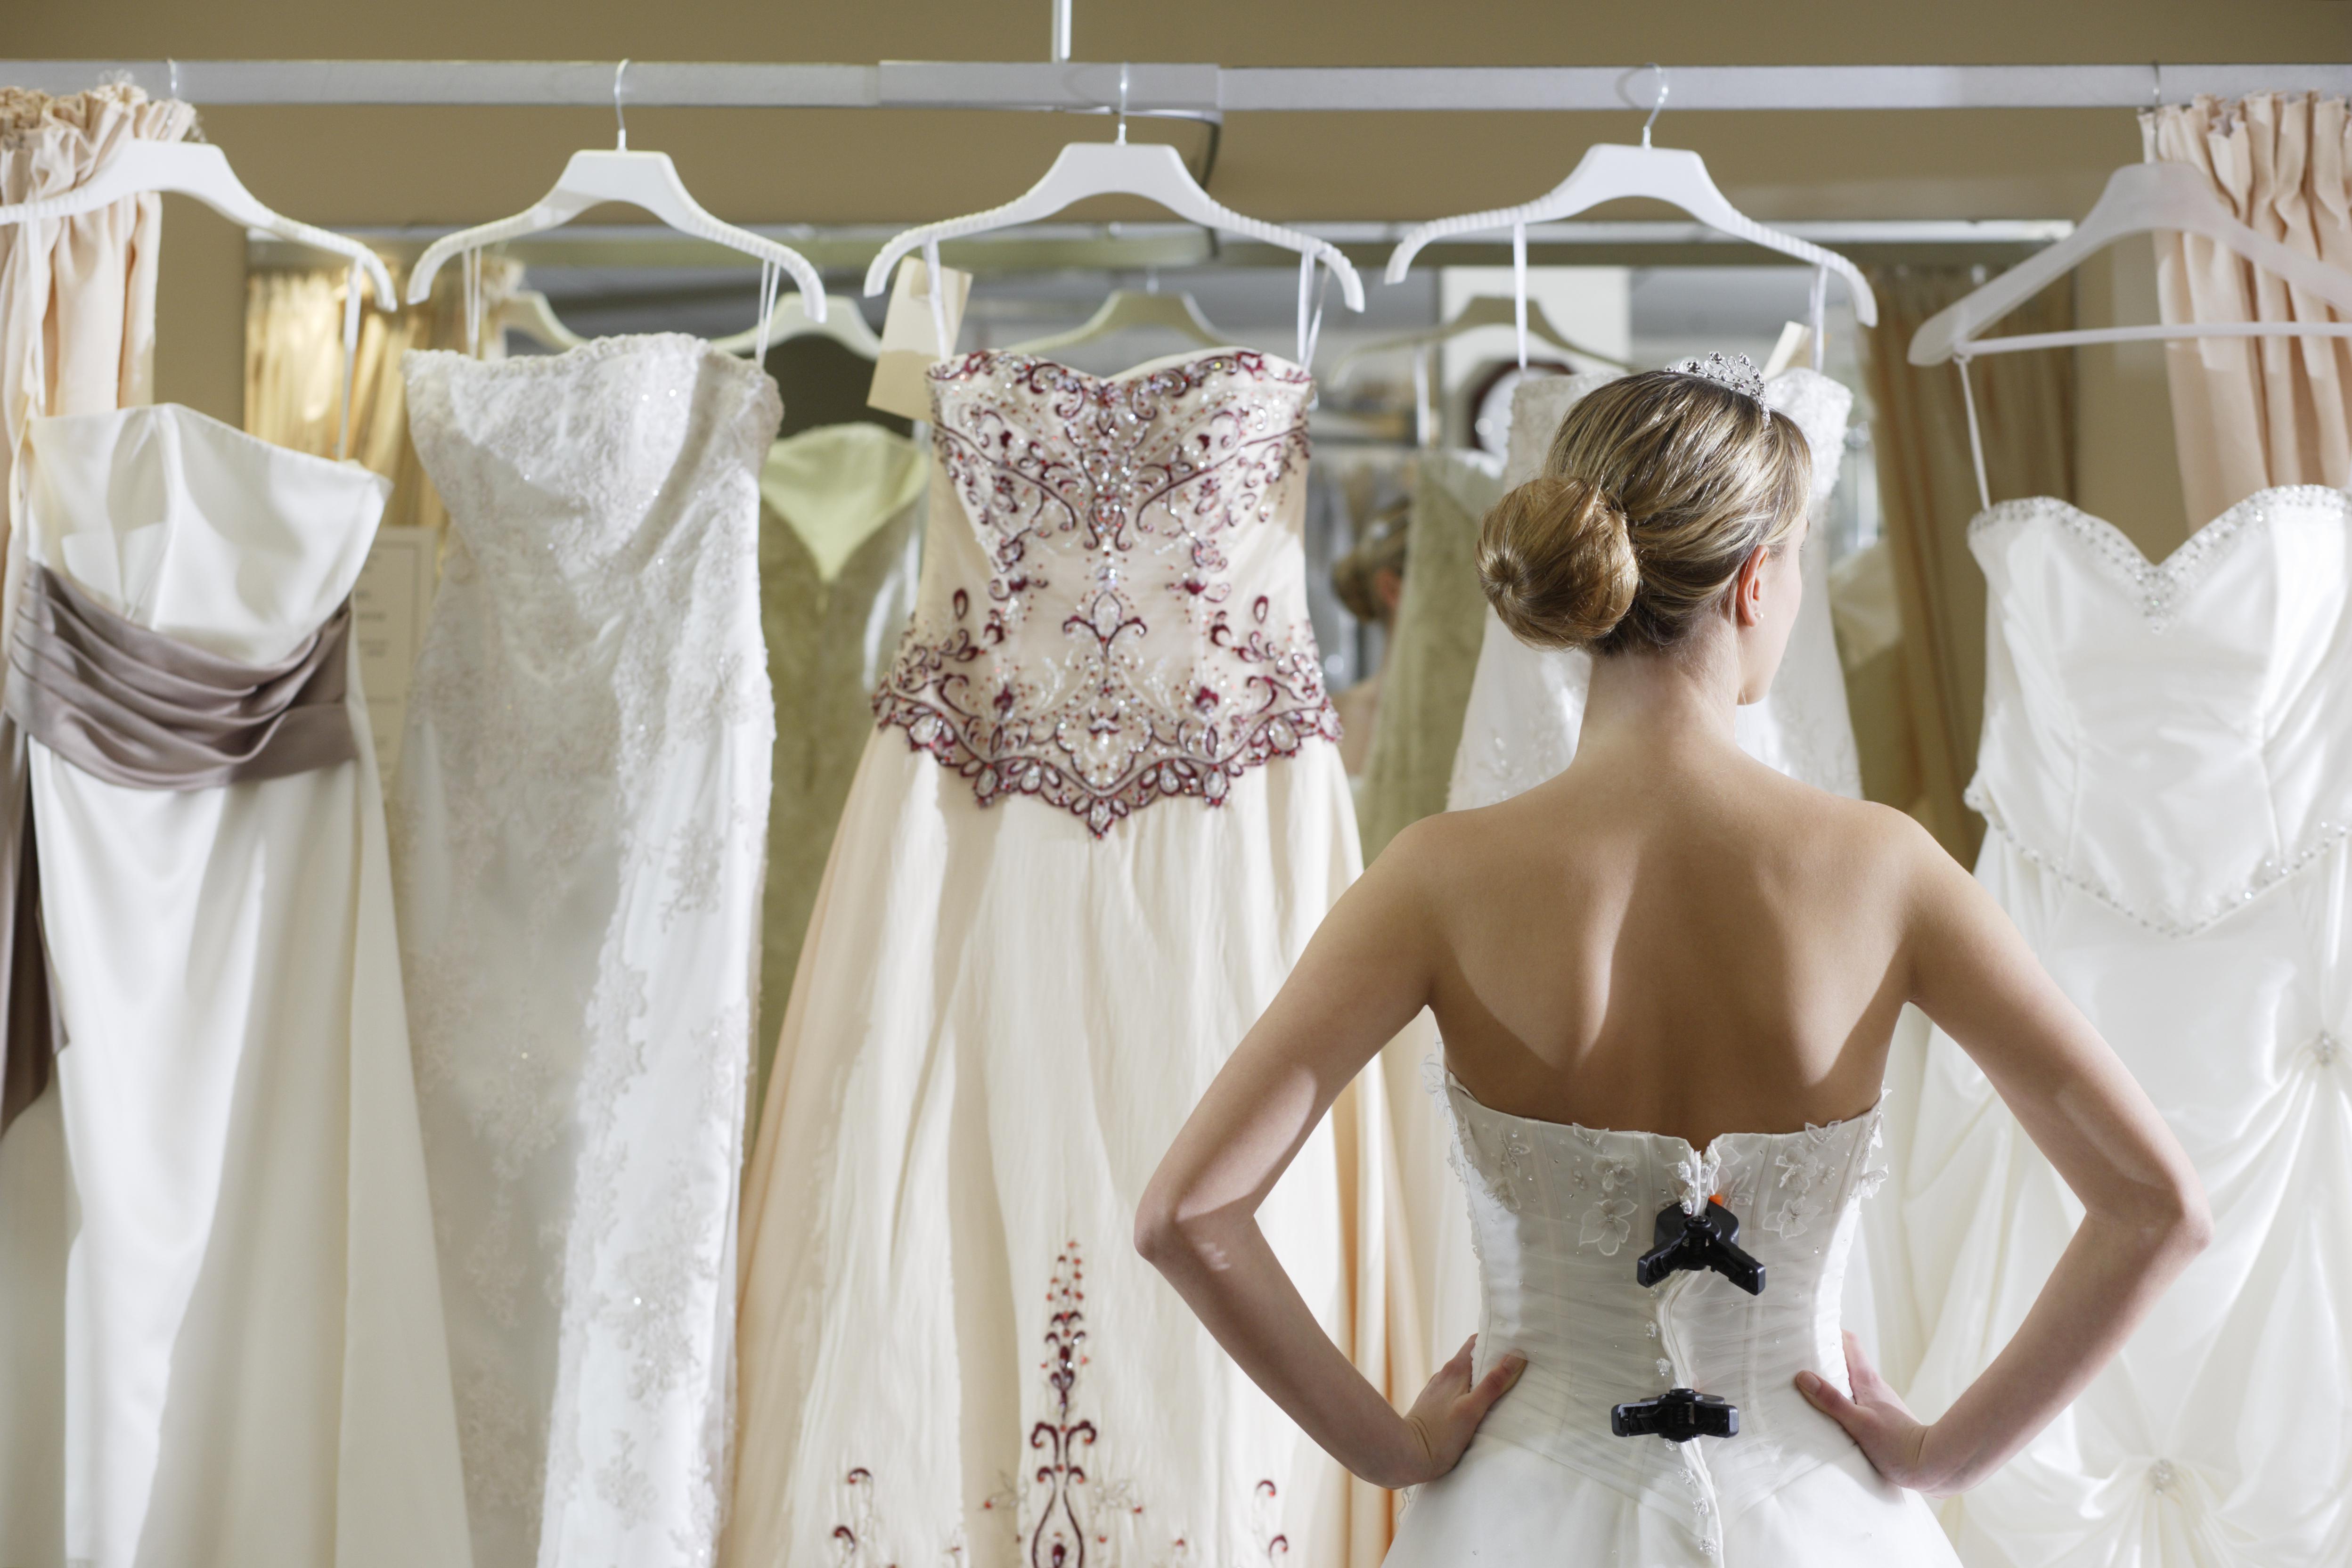 Ein Mitarbeiter der Hochzeitsbranche verriet, dass er die Schwiegermutter niemals mit diesem Kleid gehen lassen würde